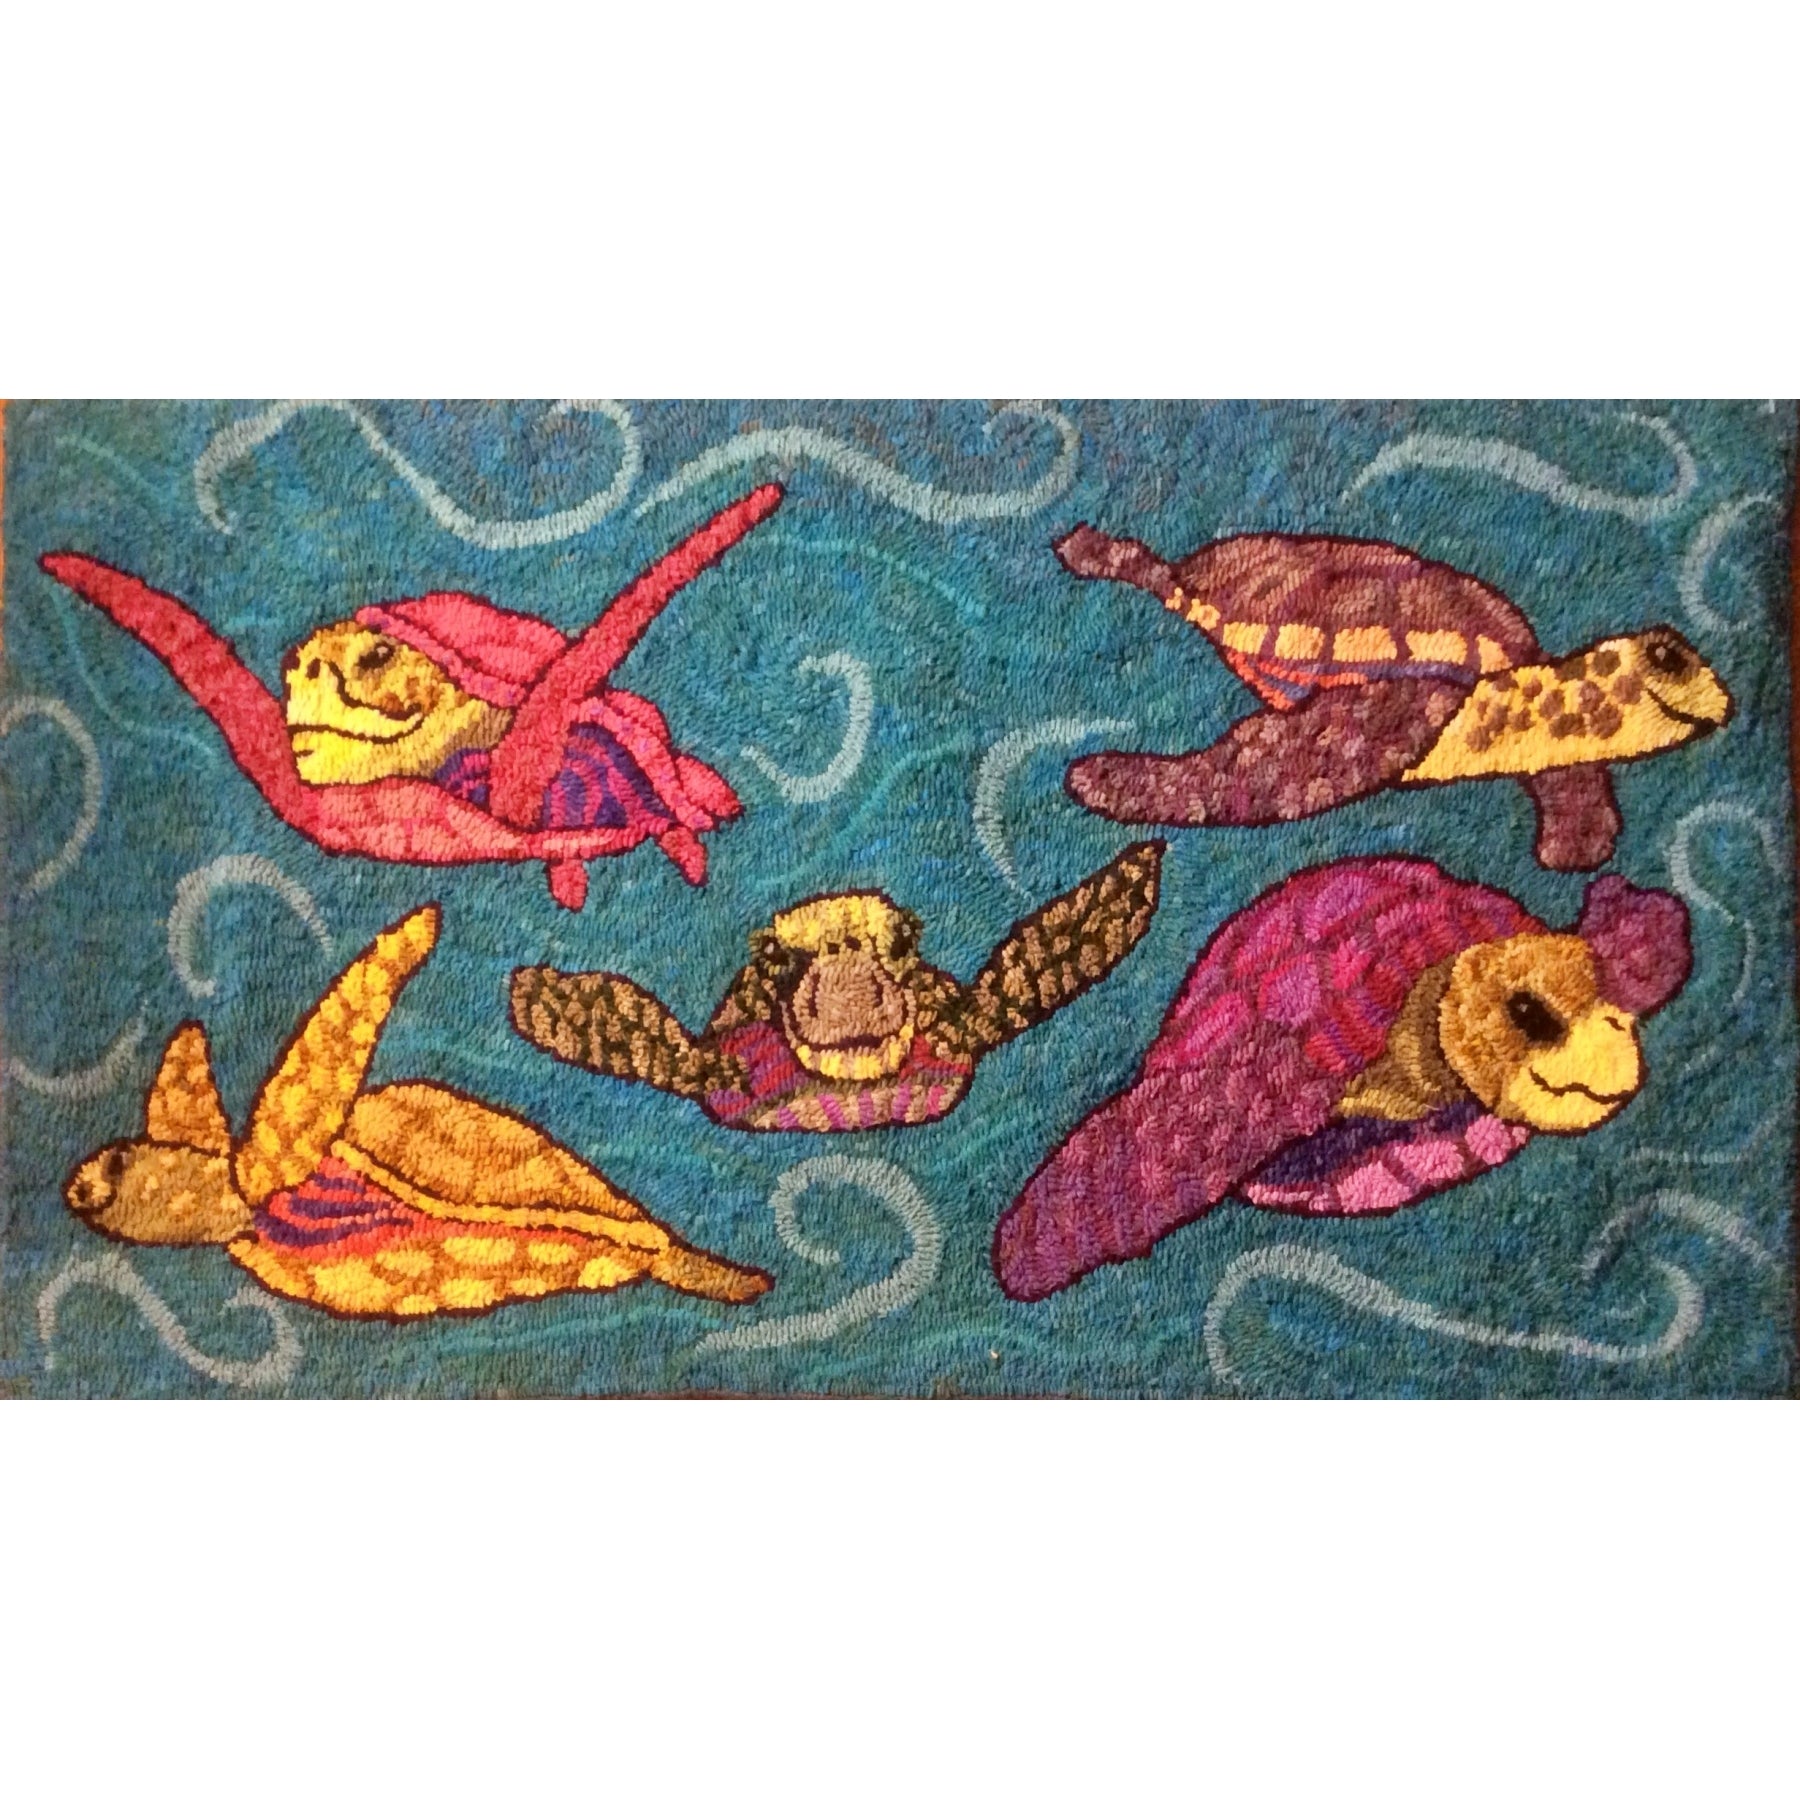 Sea Turtles, rug hooked by May Haynes